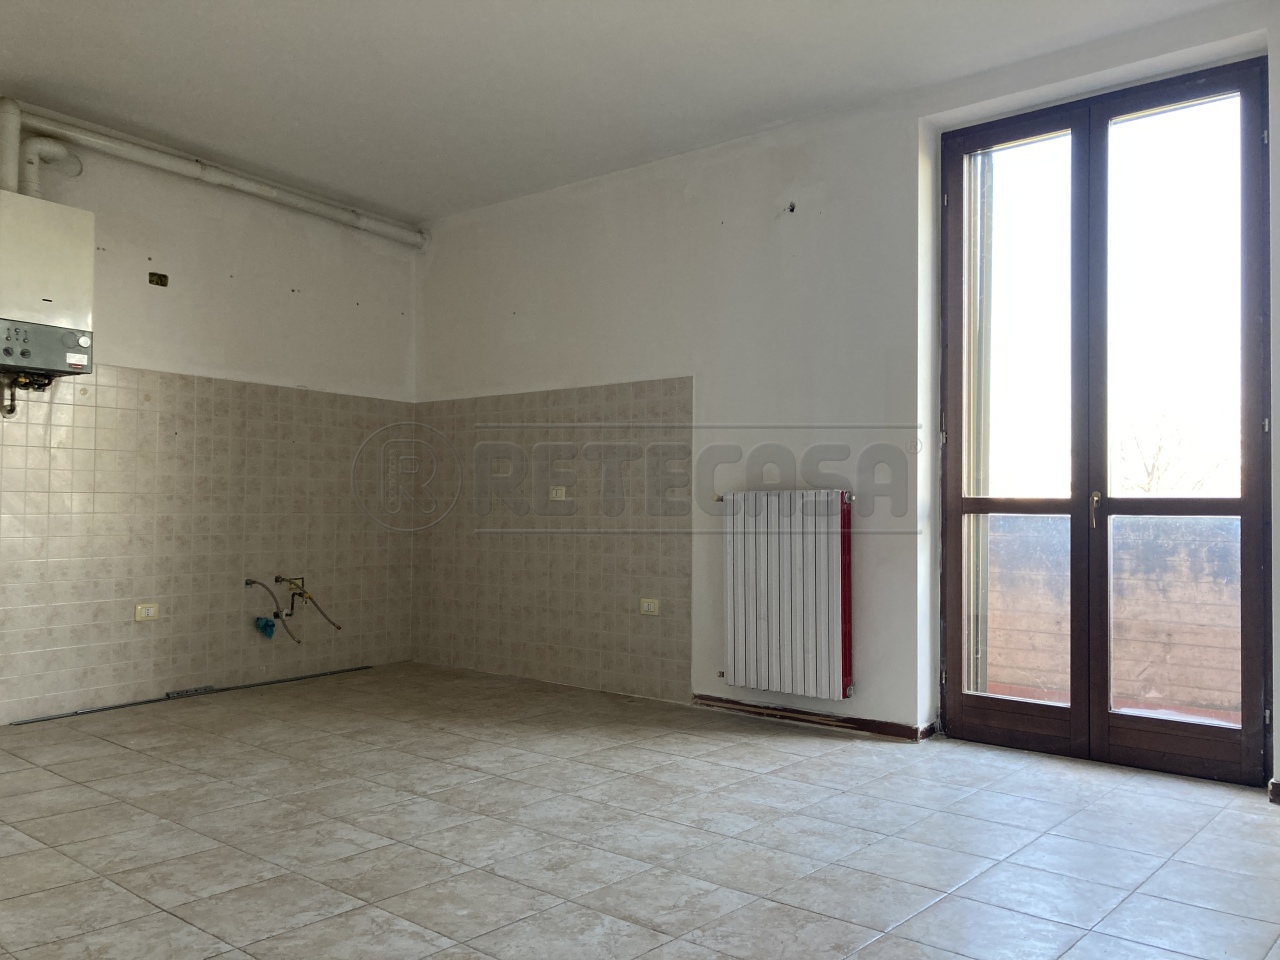 Appartamento in vendita a Montodine, 2 locali, prezzo € 55.000 | PortaleAgenzieImmobiliari.it